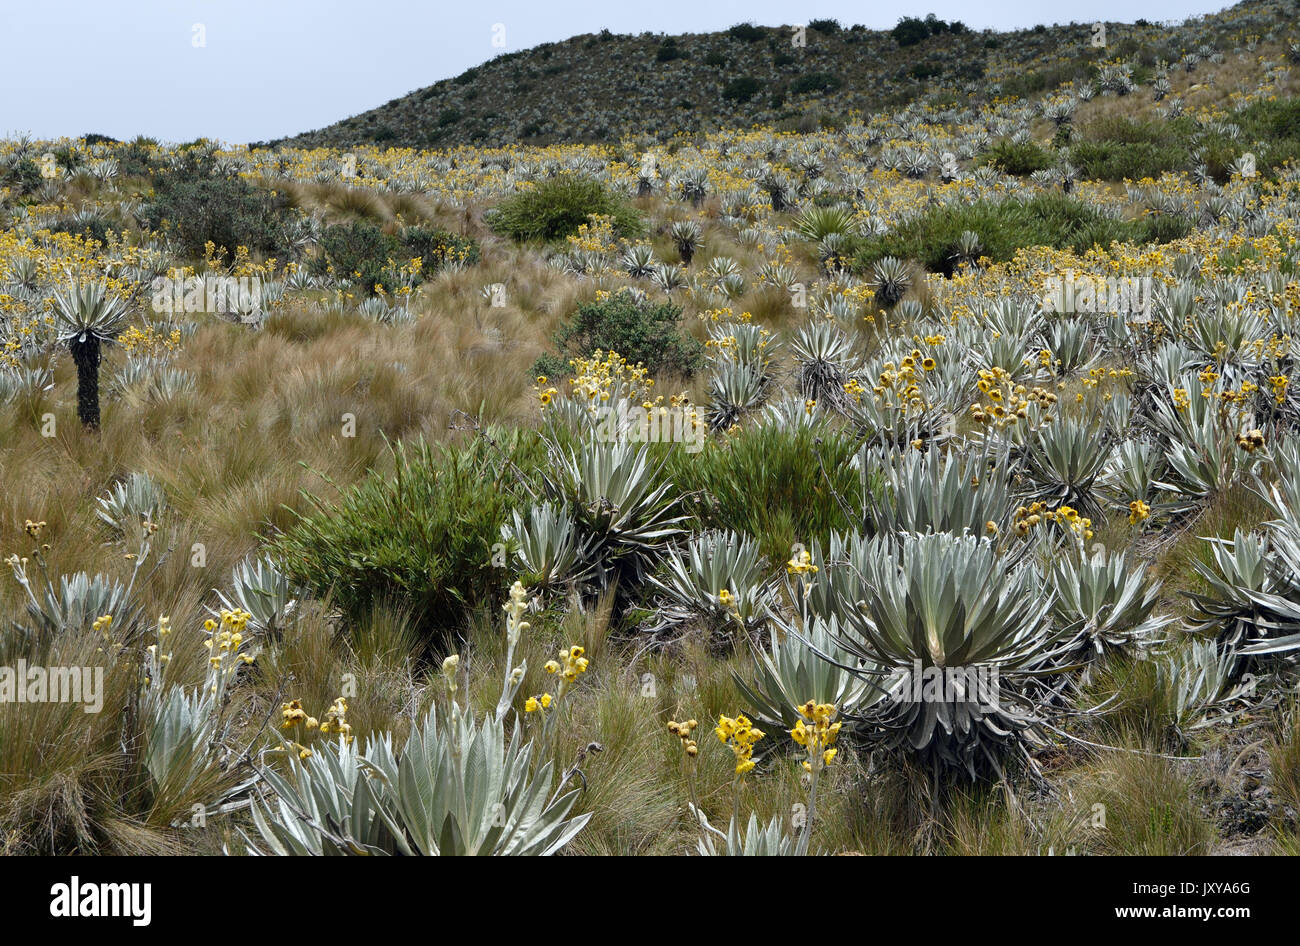 Paramo è un tipo di alpine tundra vegetazione confinata ai tropici. L'esempio qui è in Chingaza Parco Nazionale delle Ande colombiane. Foto Stock